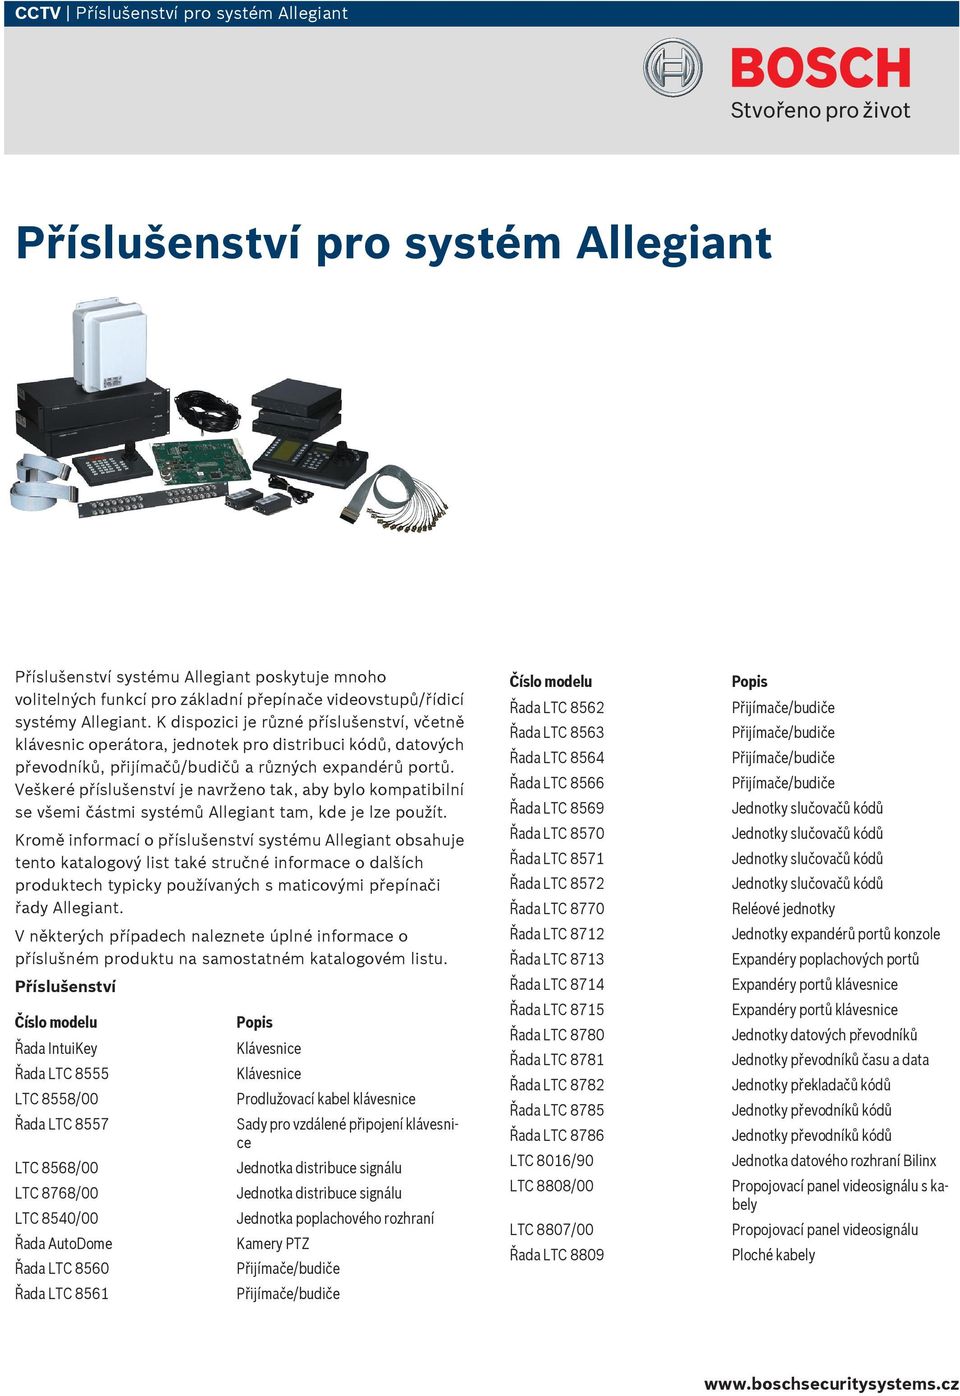 Veškeré příslušenství je navrženo tak, aby bylo kompatibilní se všemi částmi systémů Allegiant tam, kde je lze použít.